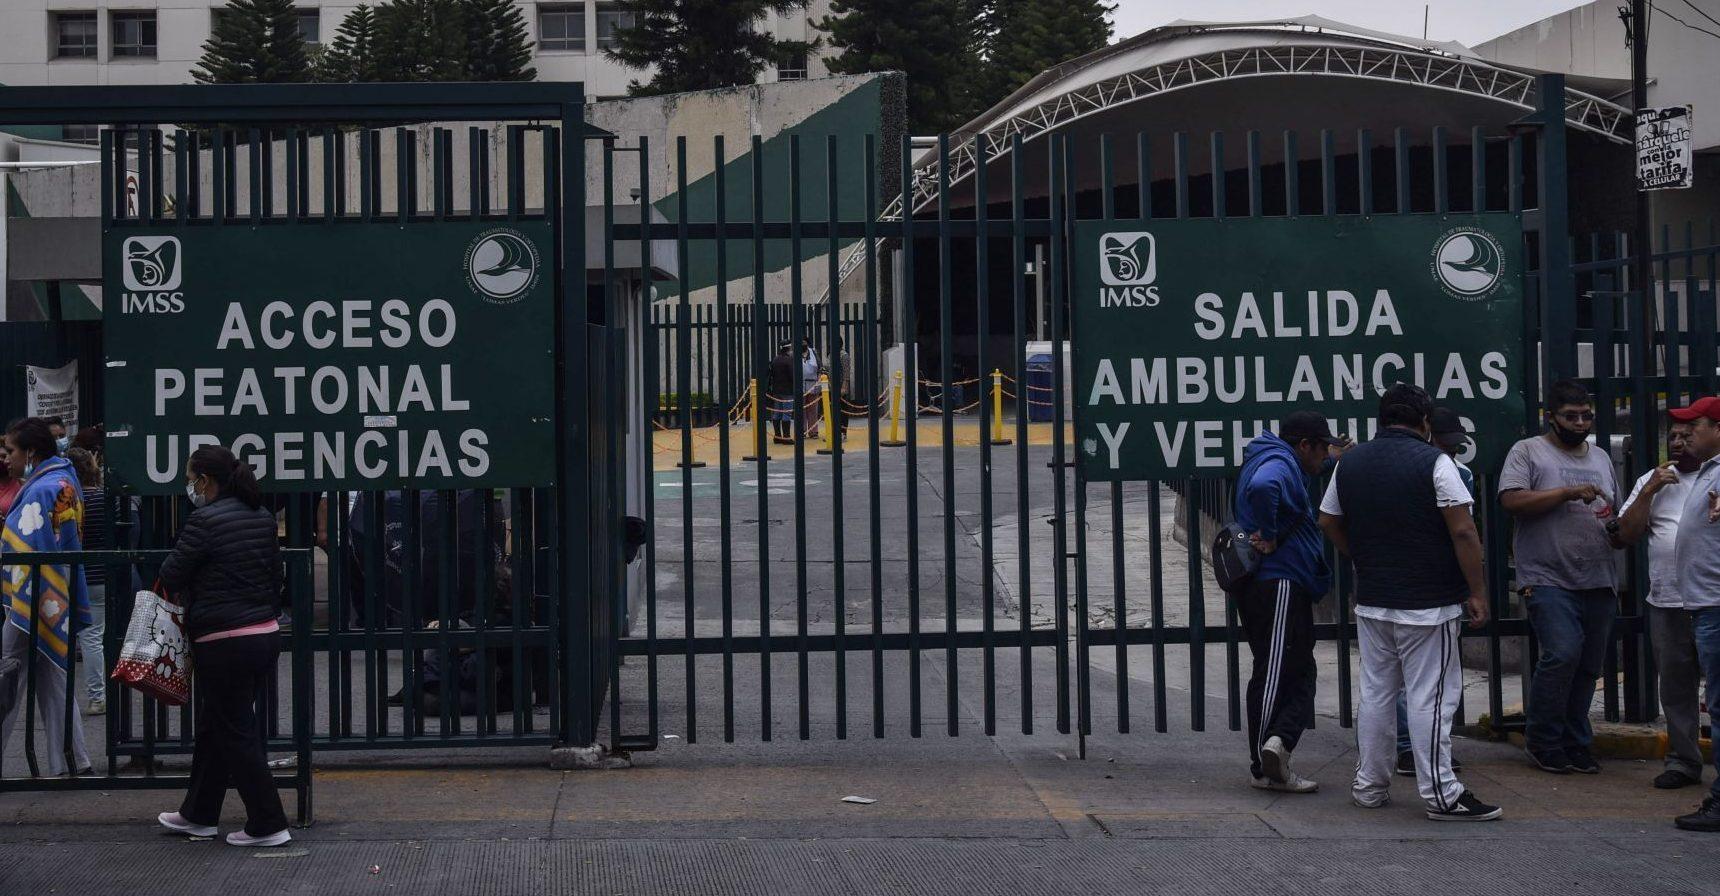 IMSS entrega cuerpo equivocado a familia de víctima de Covid-19 en Veracruz